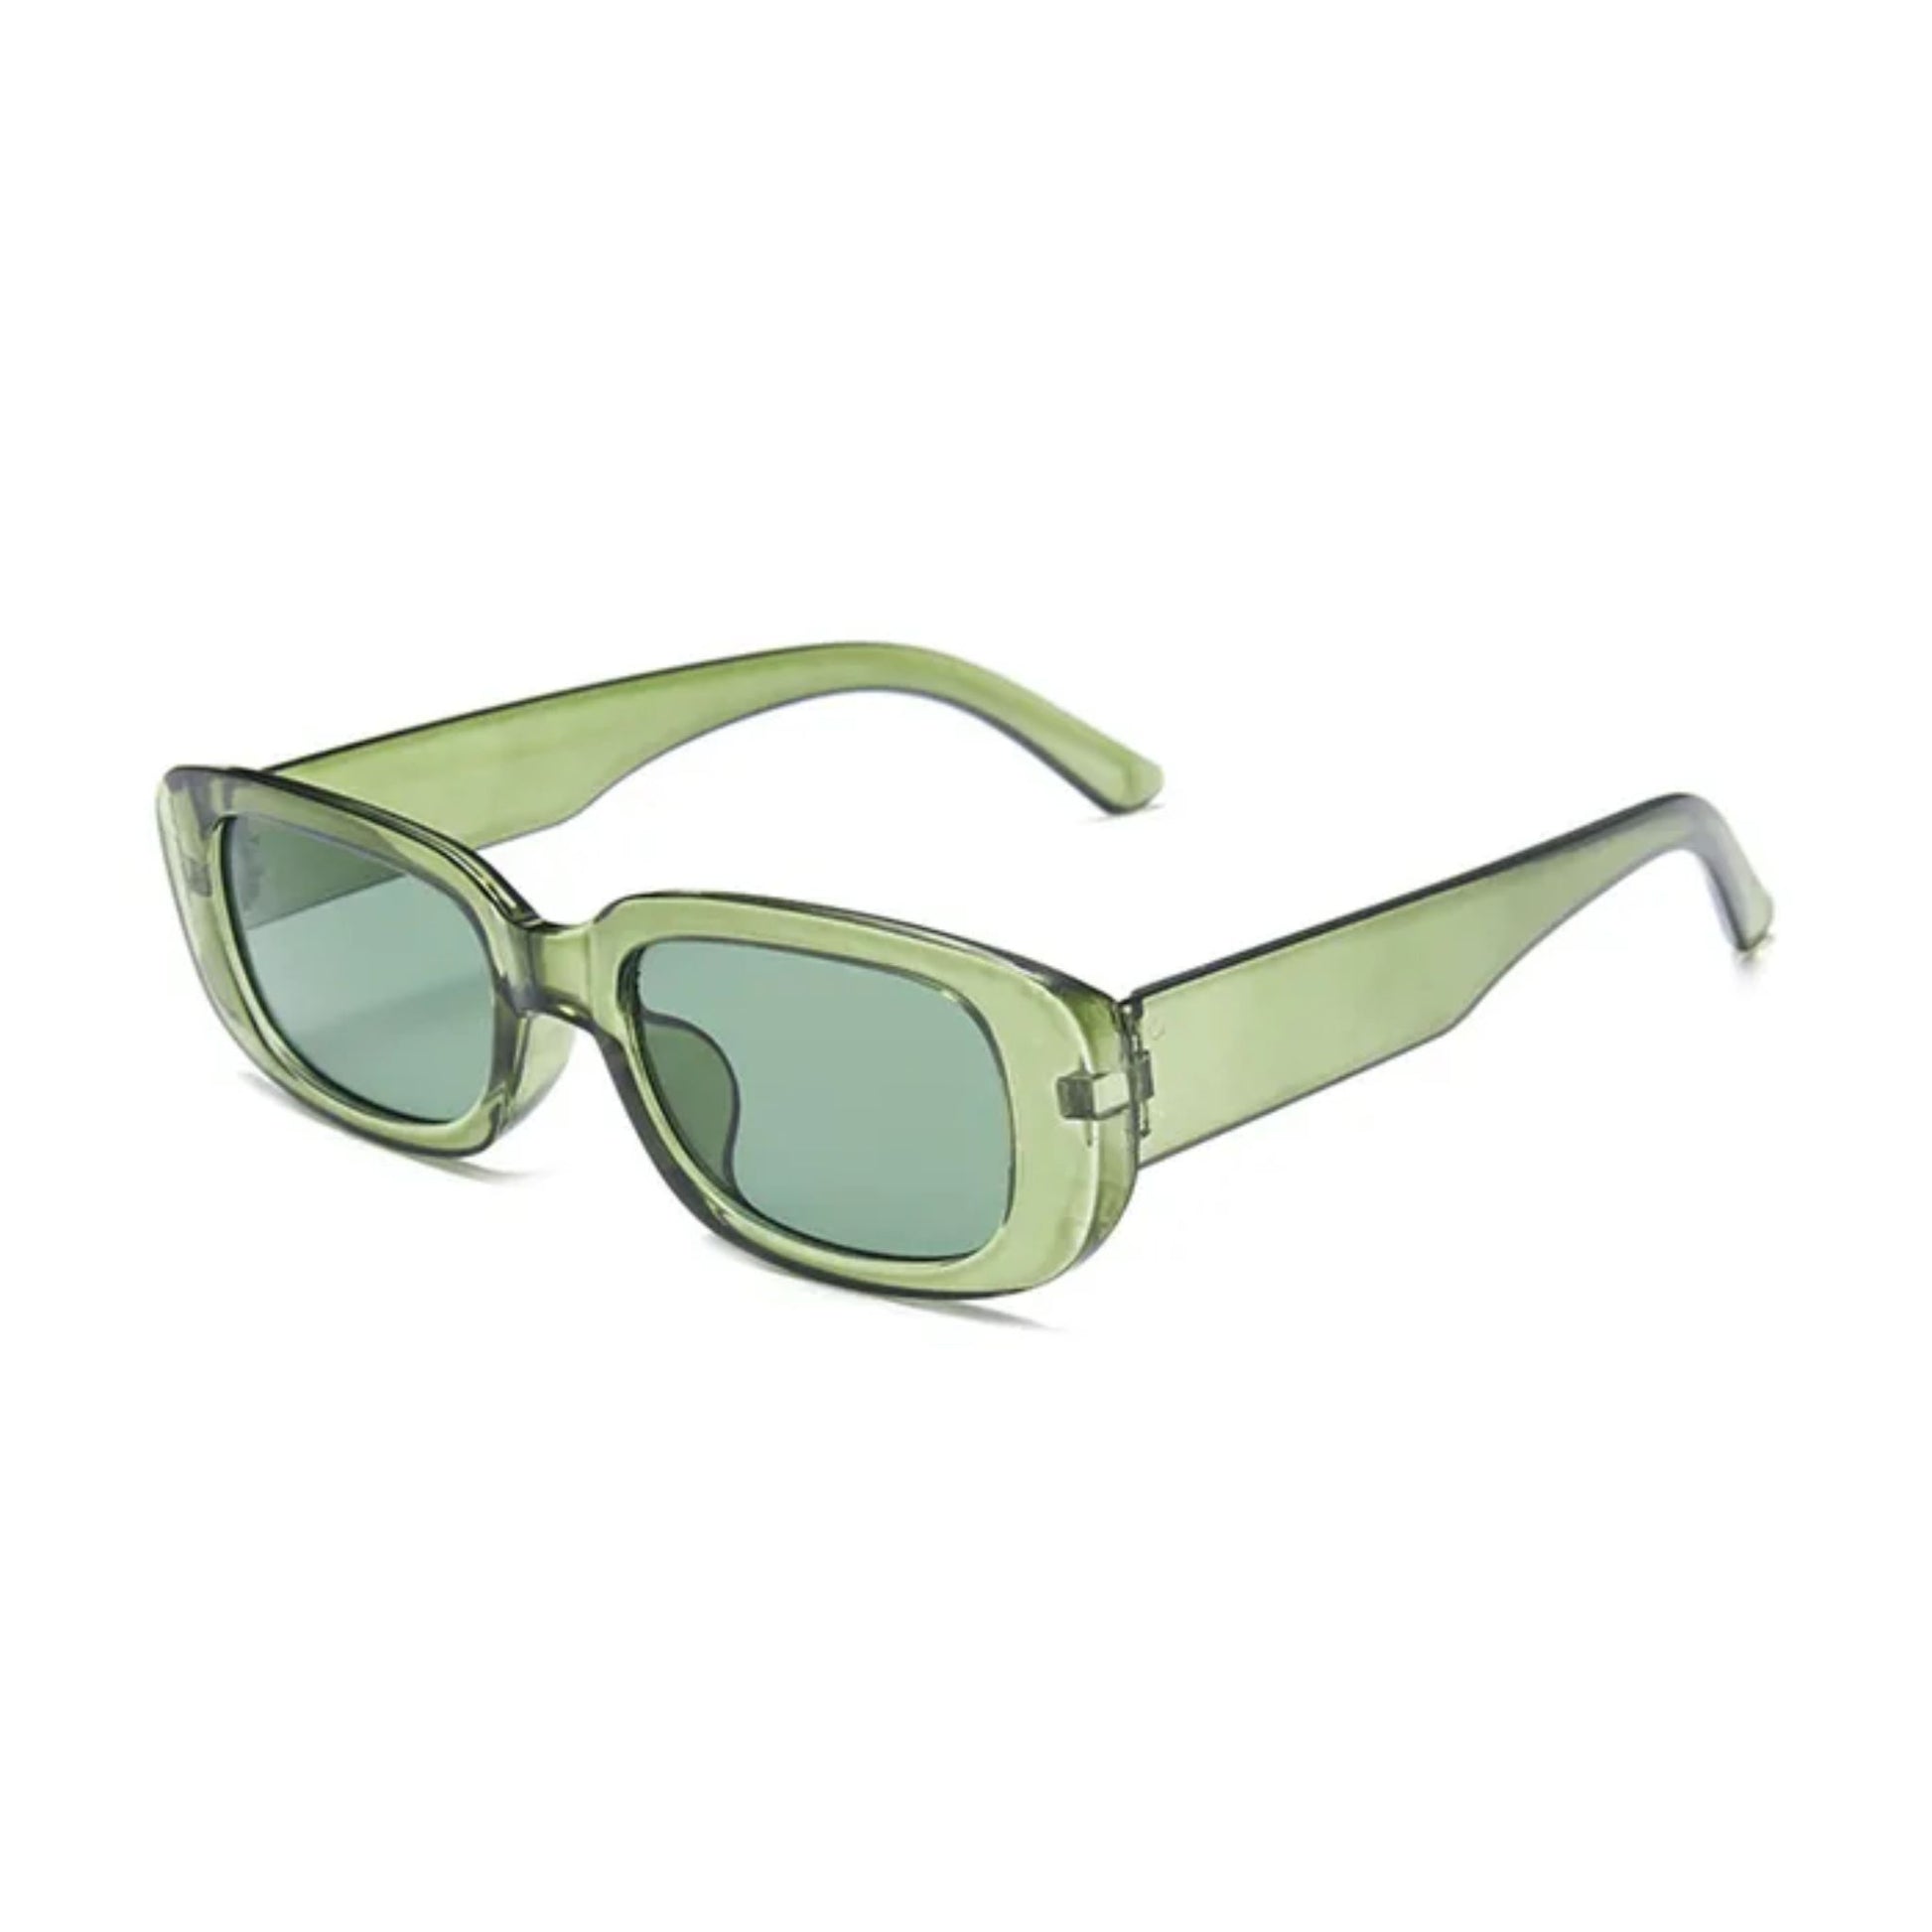 Οβάλ Γυαλιά ηλίου Kony της Exposure Sunglasses με προστασία UV400 σε πράσινο χρώμα σκελετού και πράσινο φακό. Πλάγια προβολή